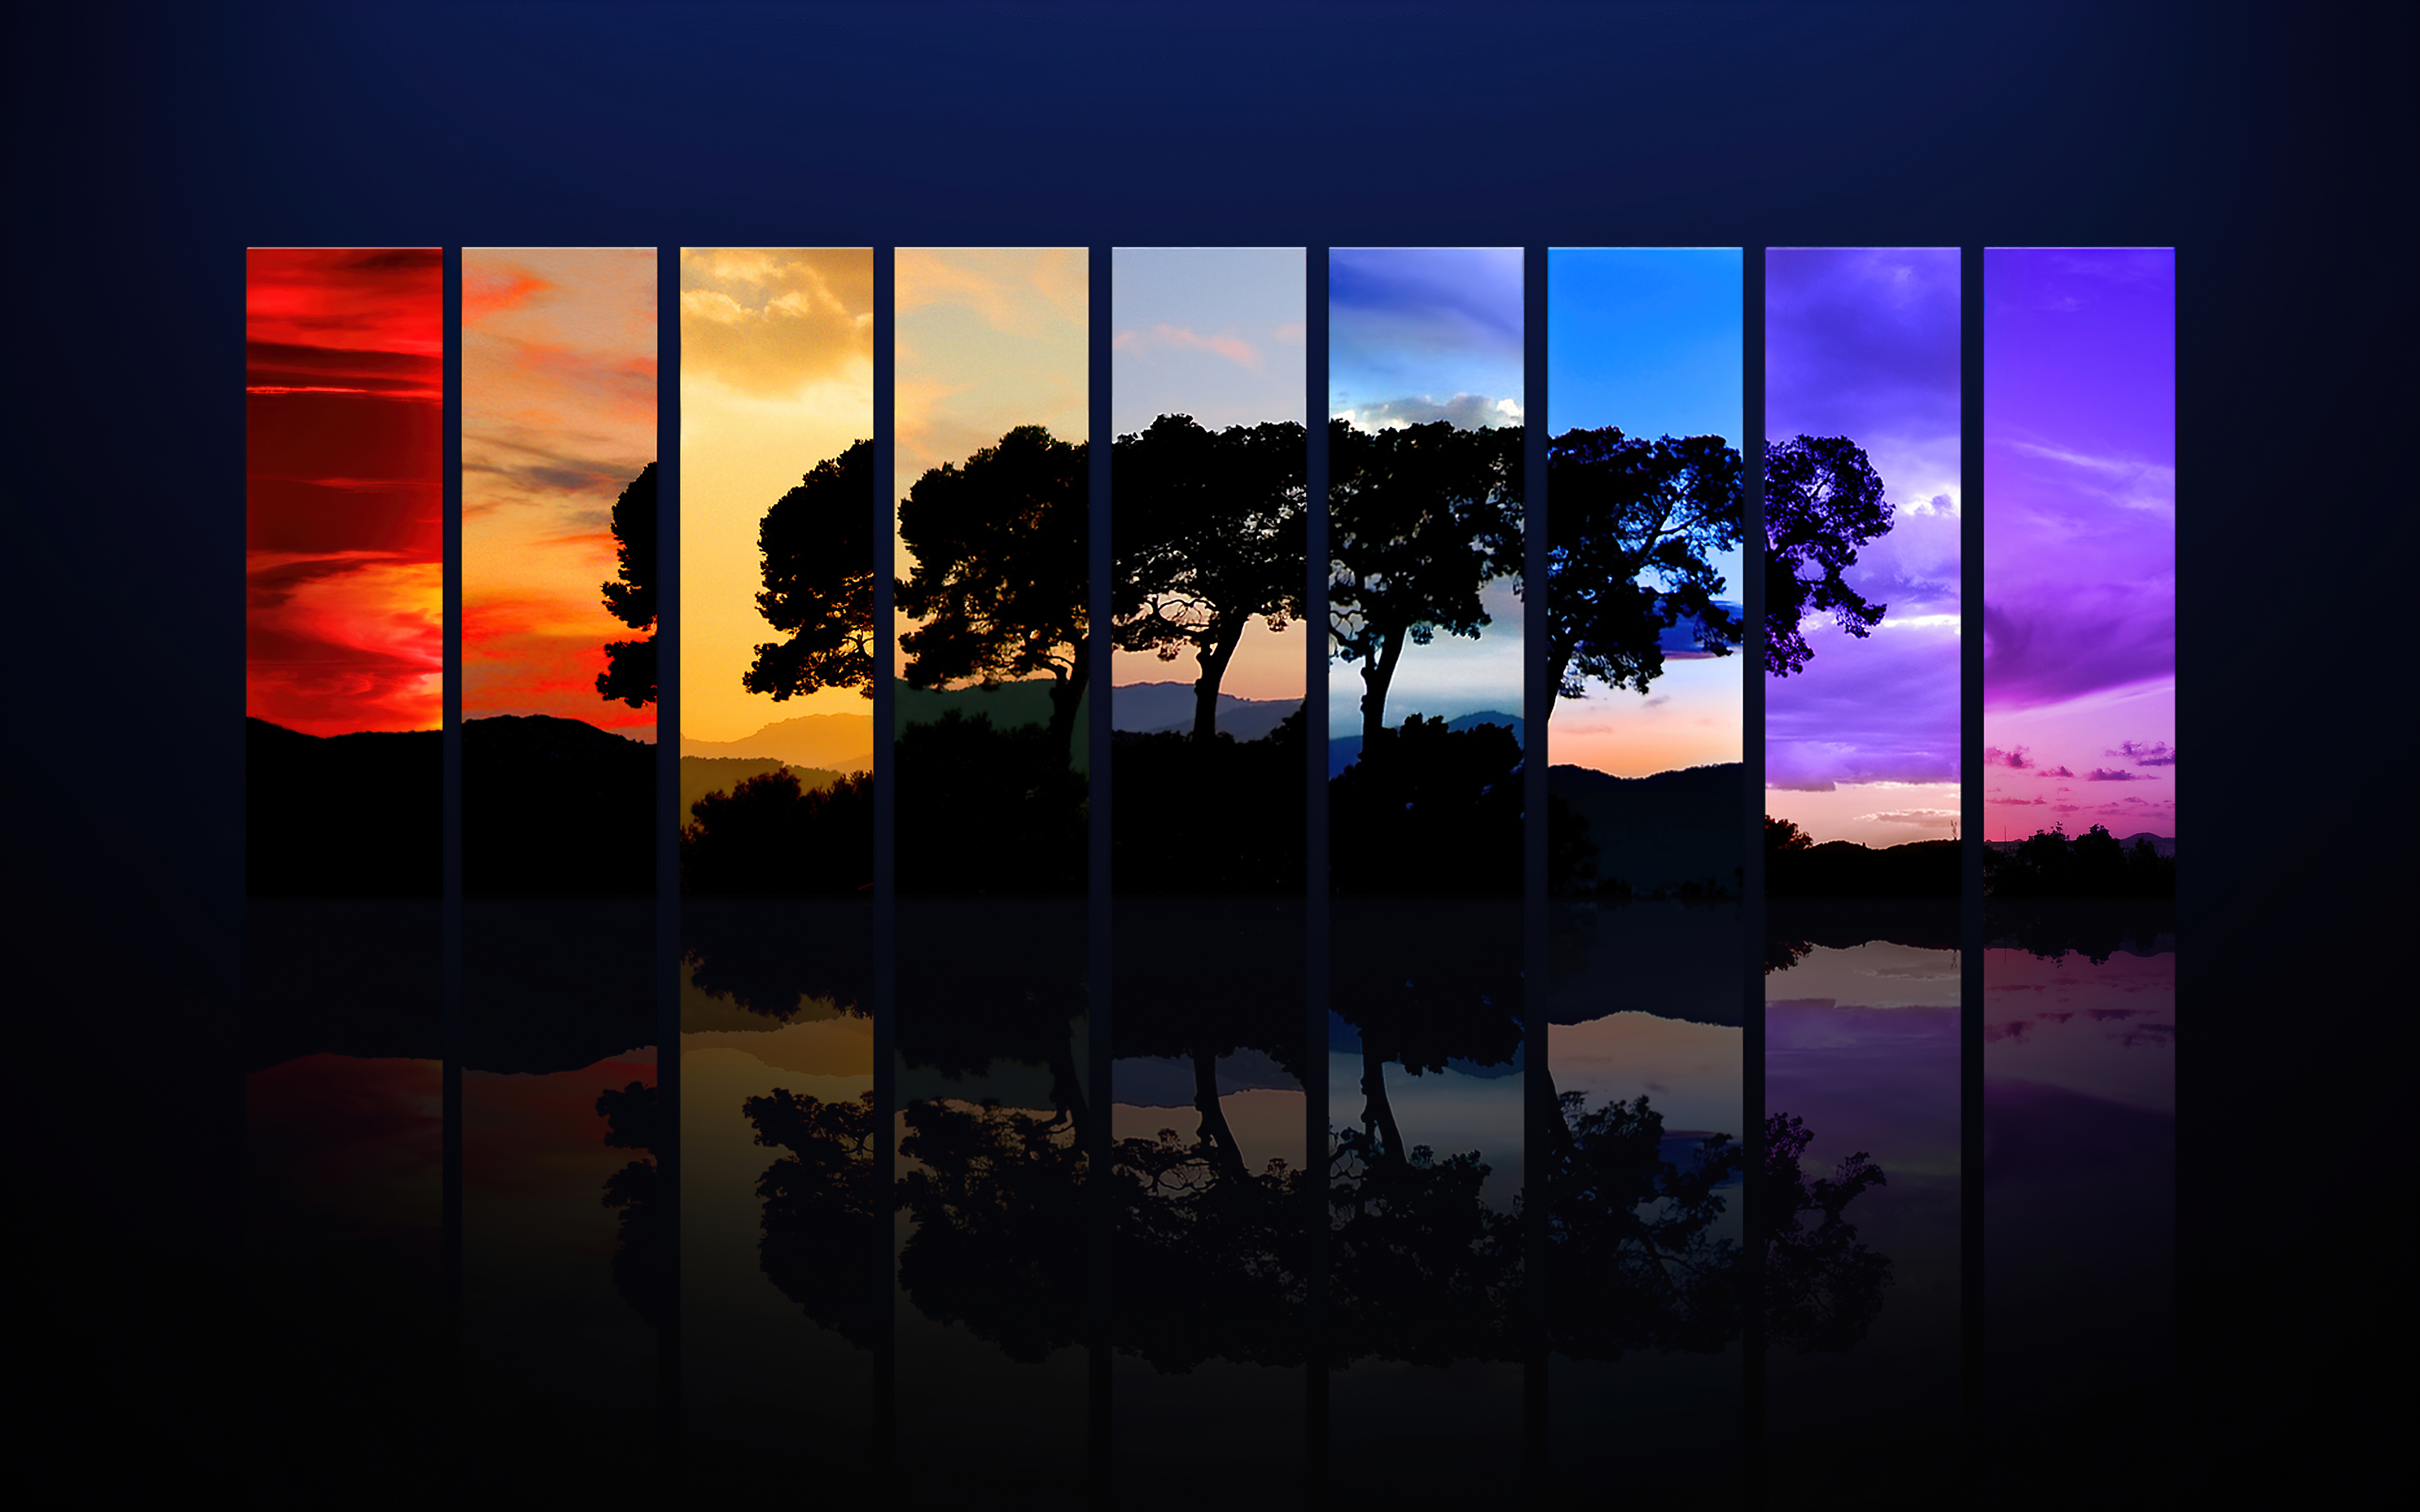 Background Wallpaper 4K for PC - Sunset